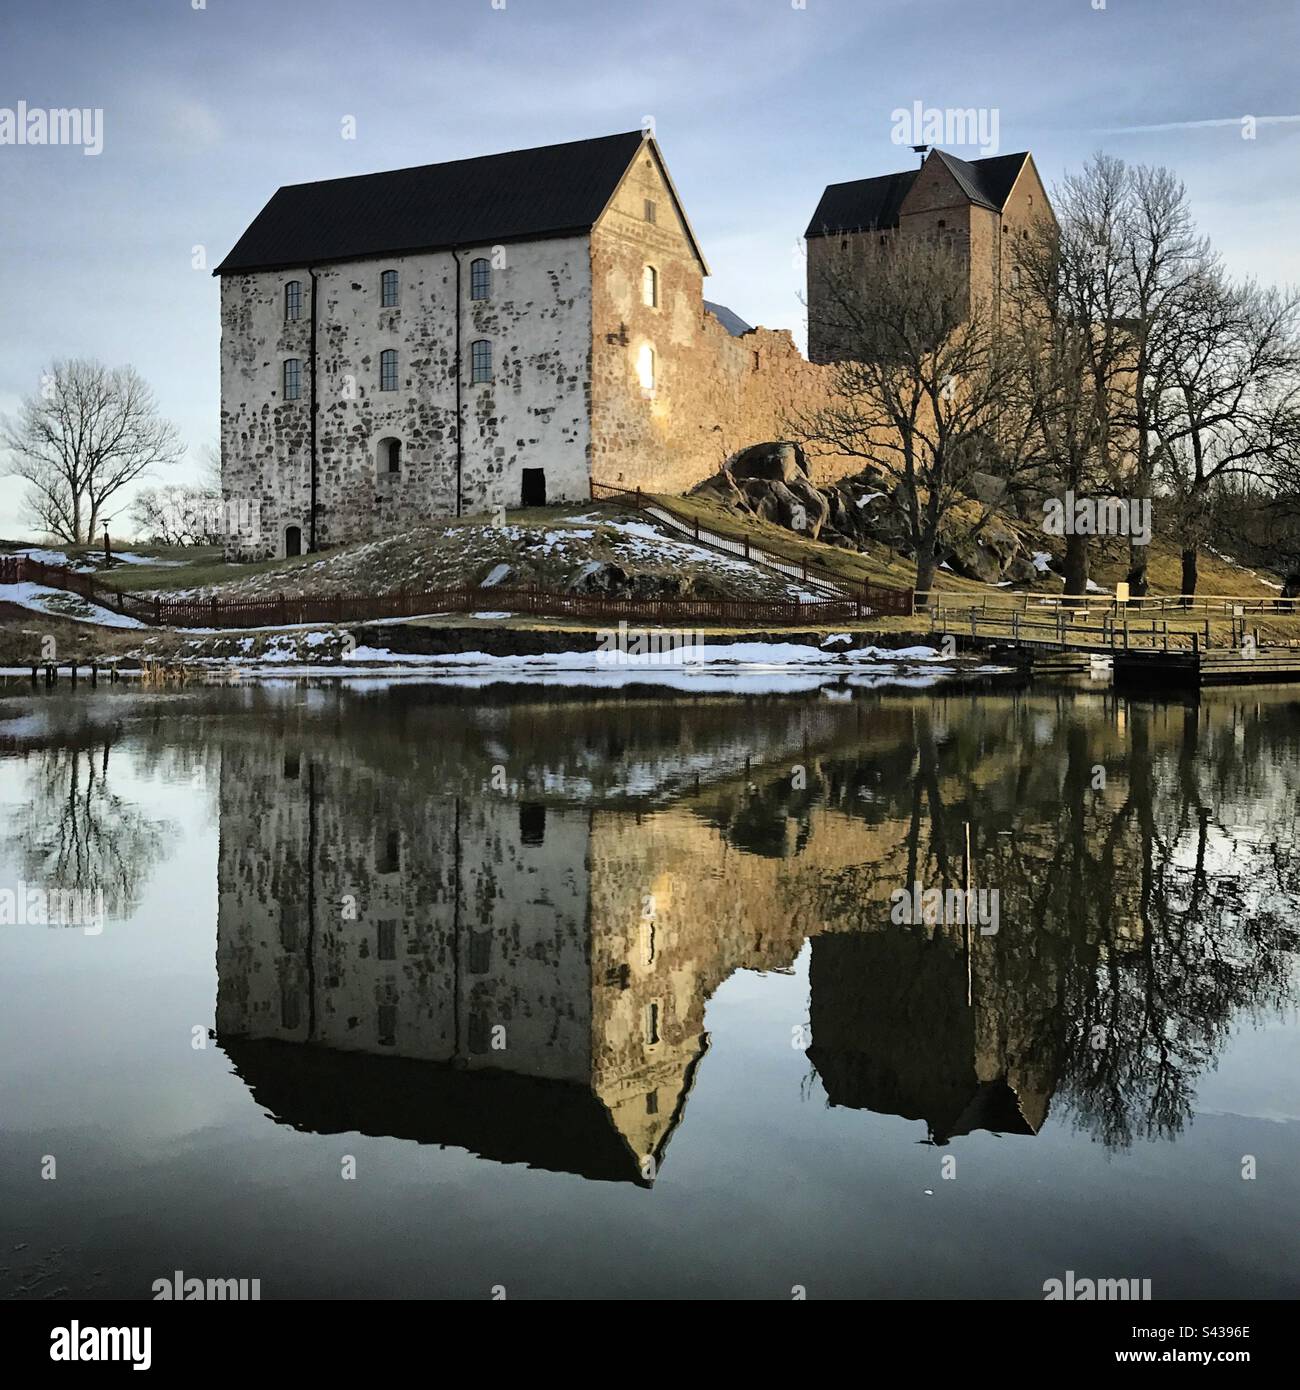 Il bellissimo castello antico di Kastelholm nell'arcipelago delle isole Åland, nella regione del Mar Baltico in Finlandia, in inverno. Foto Stock